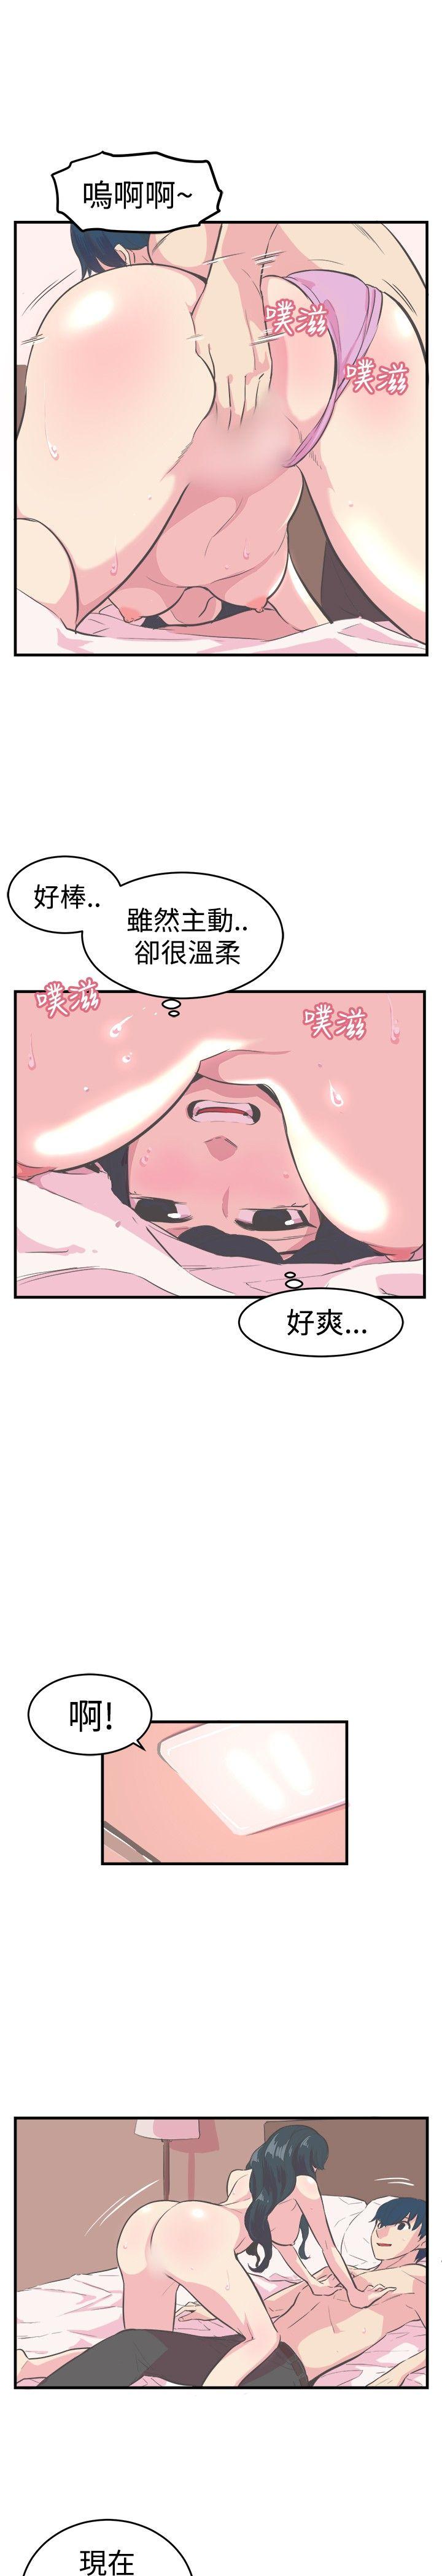 韩国污漫画 青春男女(完結) 第11话 16